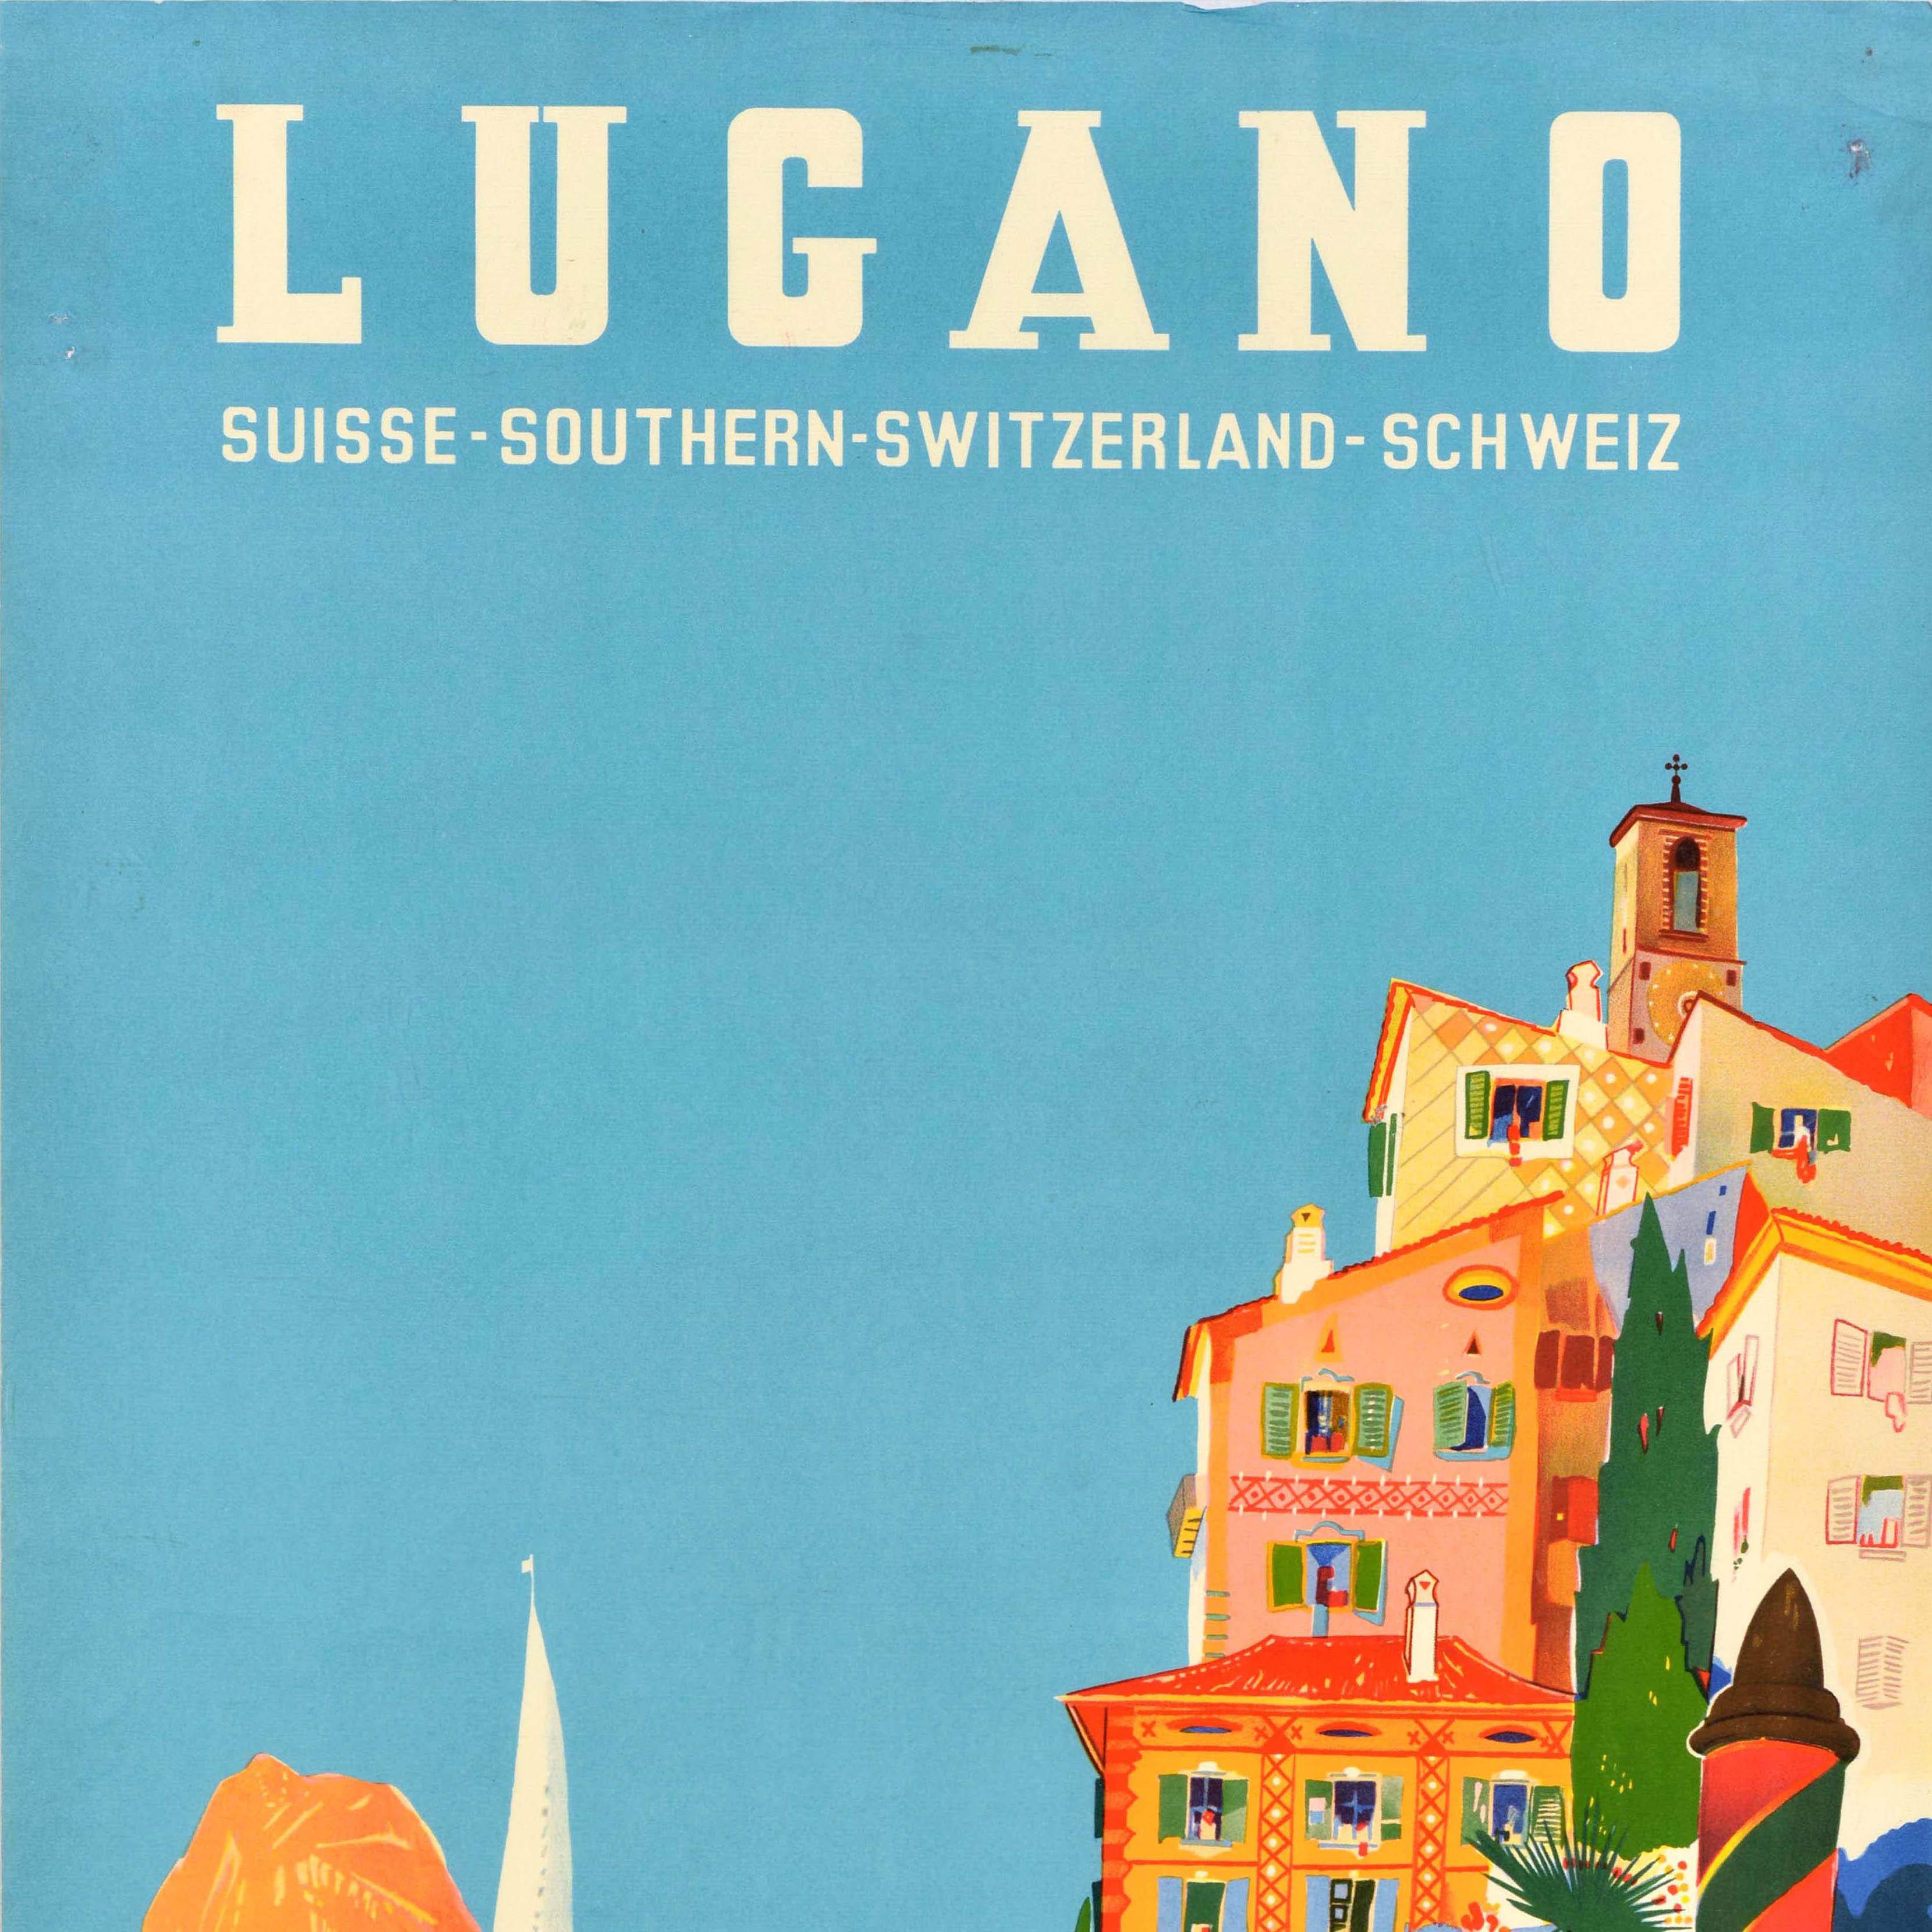 Swiss Original Vintage Travel Poster Lugano Southern Switzerland Suisse Schweiz Buzzi For Sale